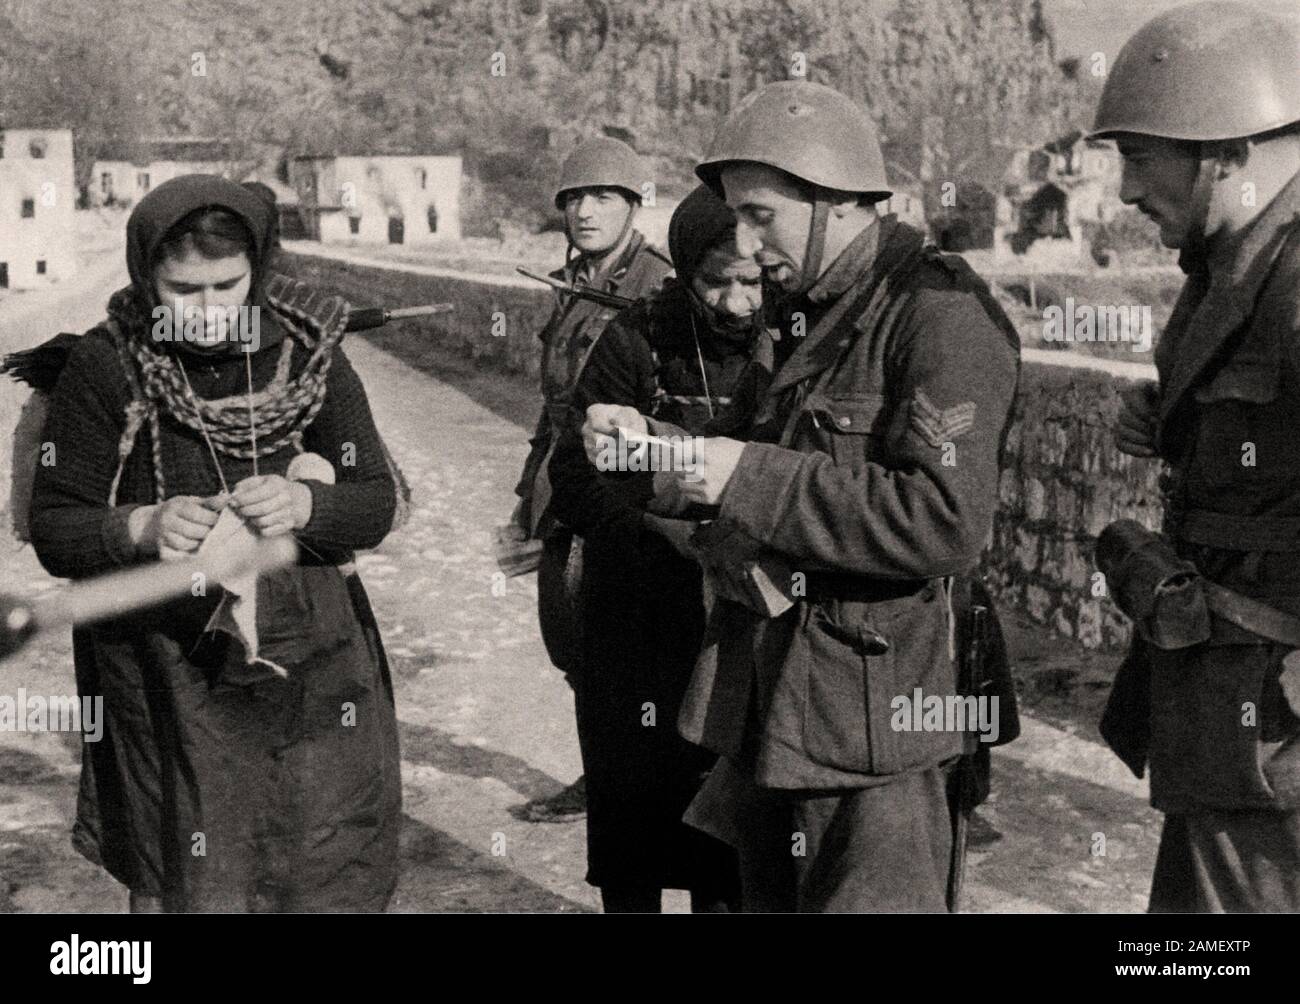 Italiano en la Segunda Guerra Mundial Los soldados italianos que custodian un puente comprueban los I.D.s de dos mujeres montenegrinas, invierno de 1942 Foto de stock